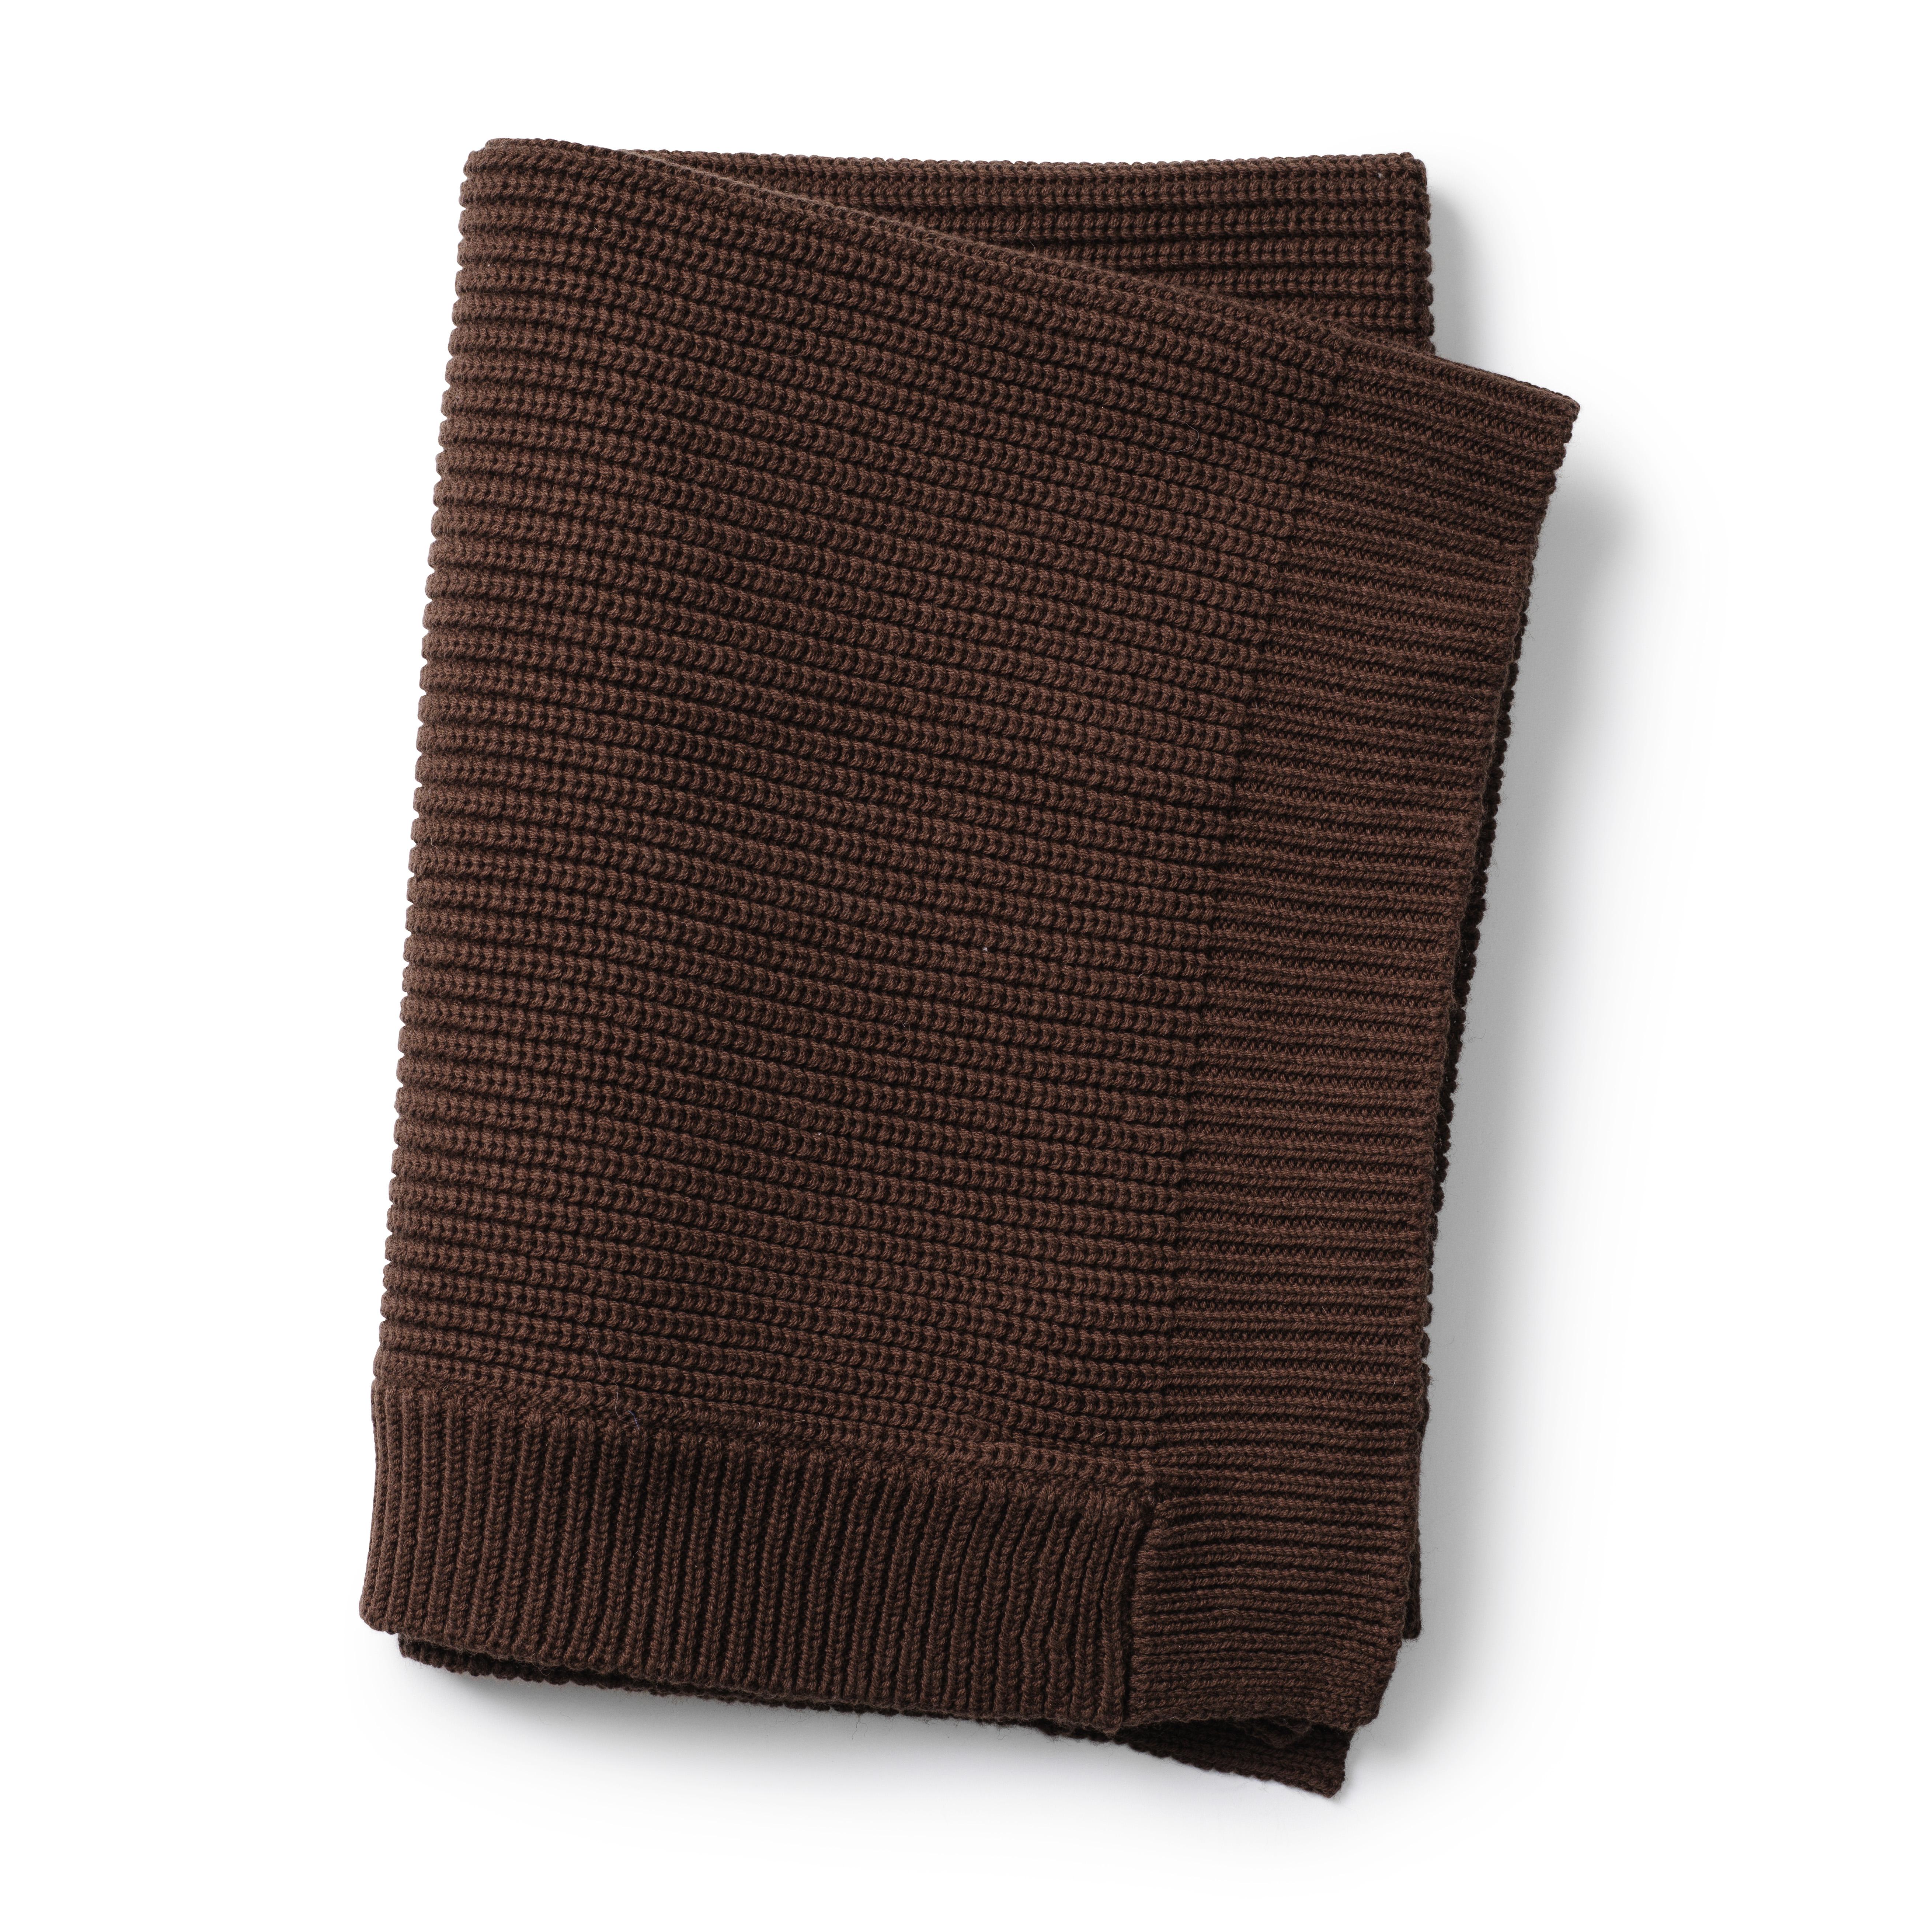 Elodie Details Wool Knitted Blanket- Chocolate  Chocolate - Elodie Details